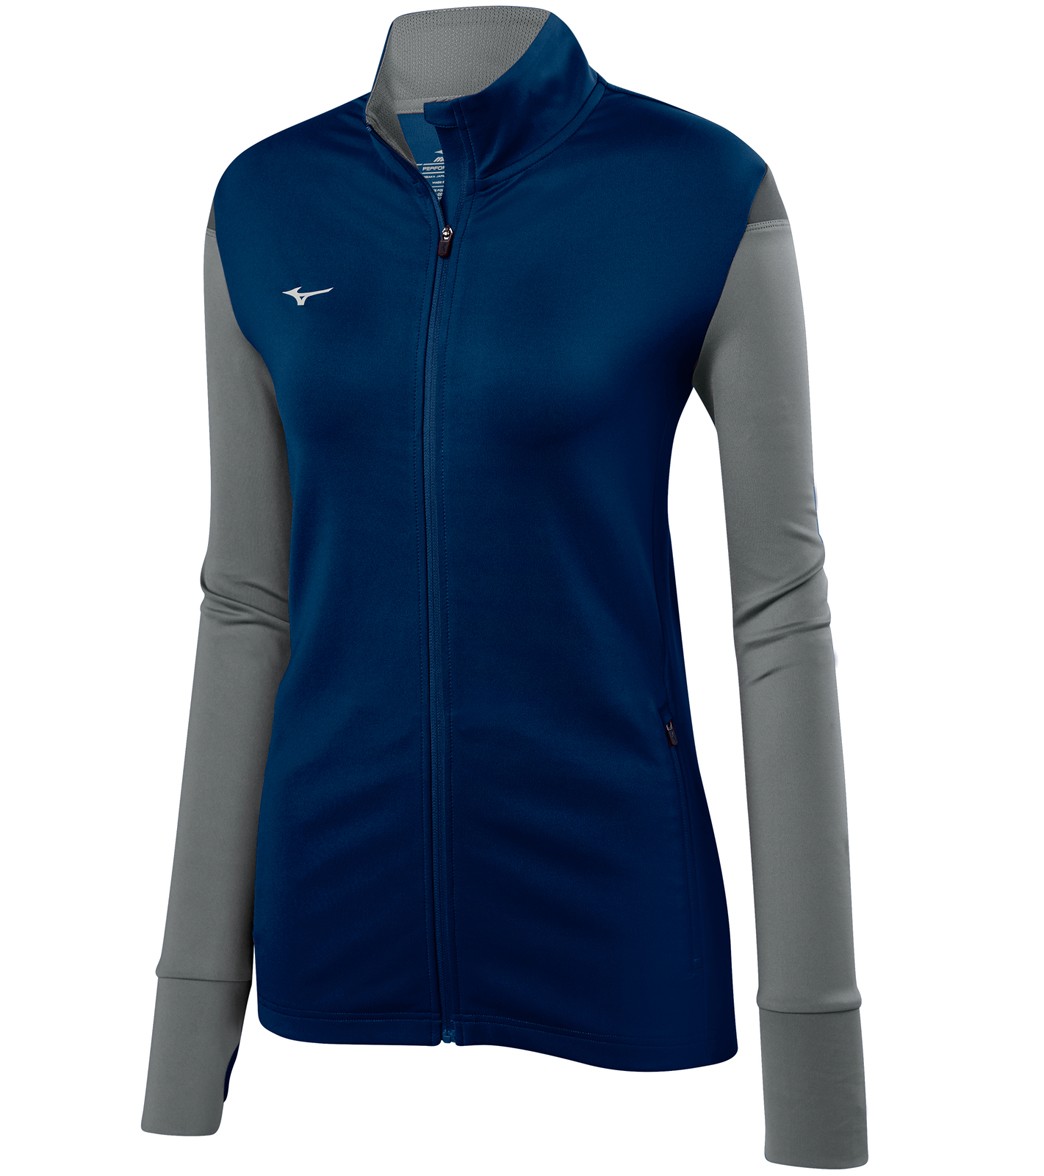 Mizuno Women's Horizon Full Zip Volleyball Jacket - Navy/Grey/Charcoal Medium - Swimoutlet.com